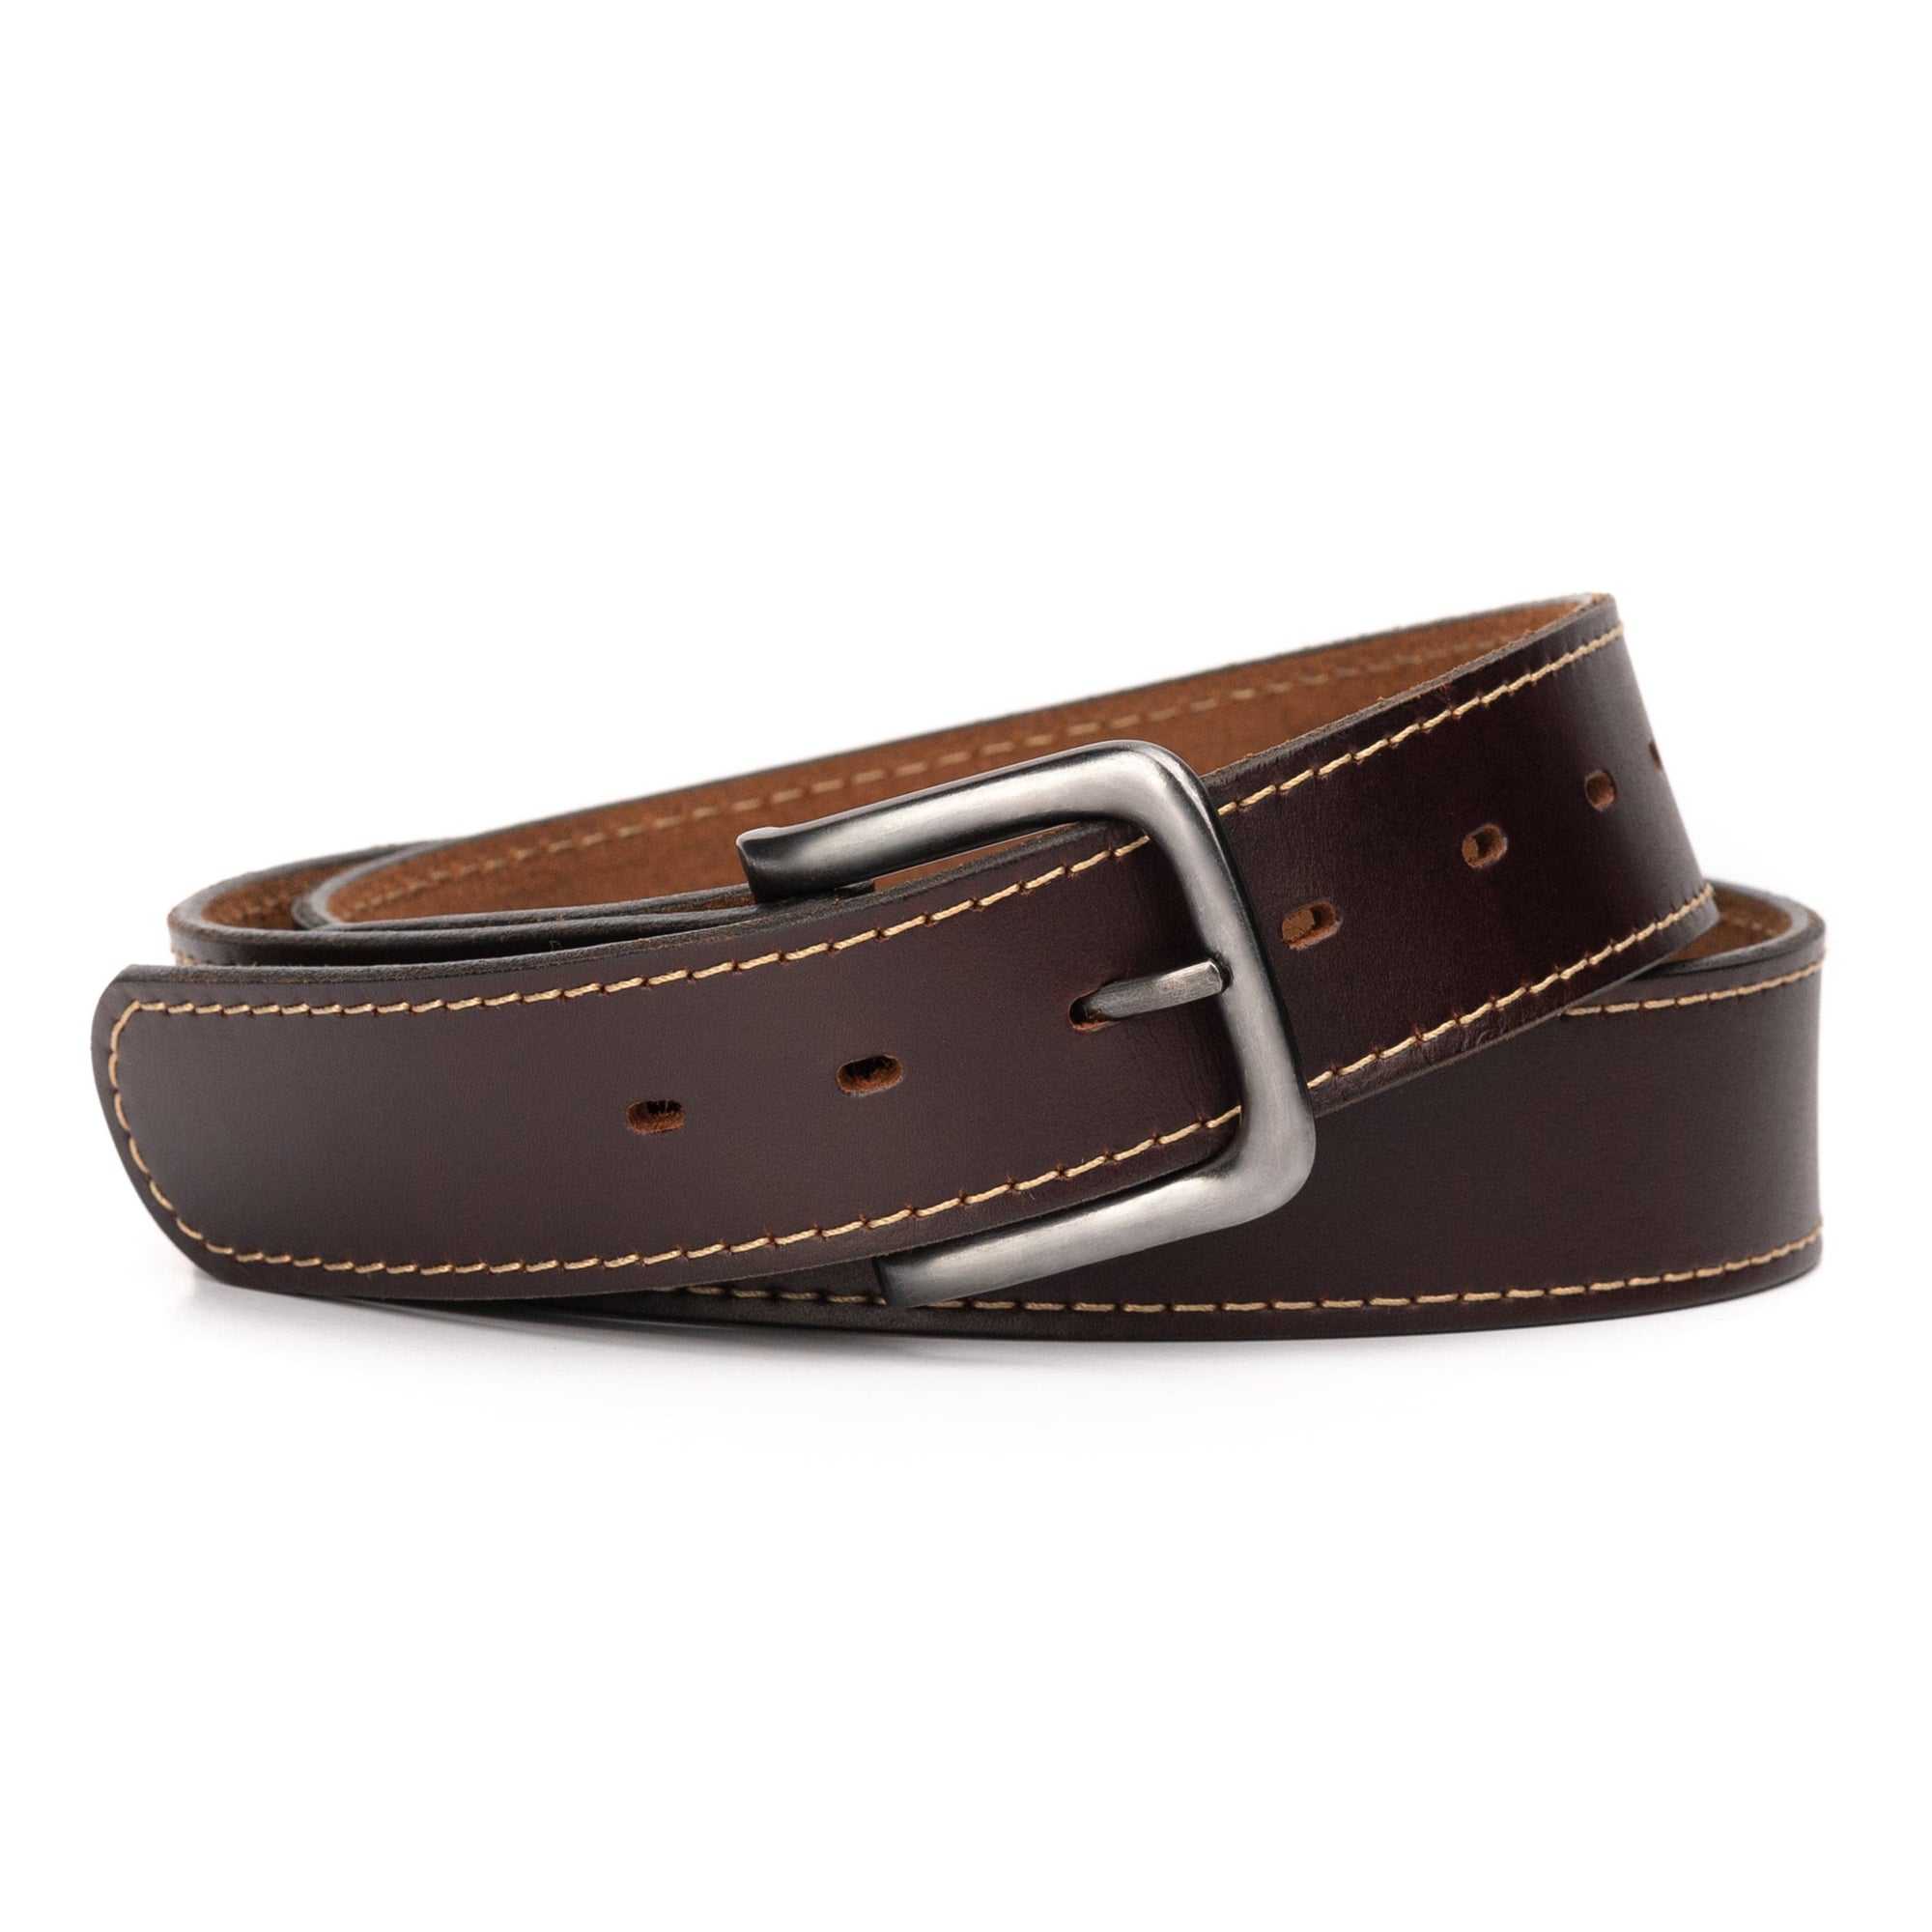 The Outrider Belt | Made in USA | Tan Full Grain Leather Belt for Men | Men's Belt